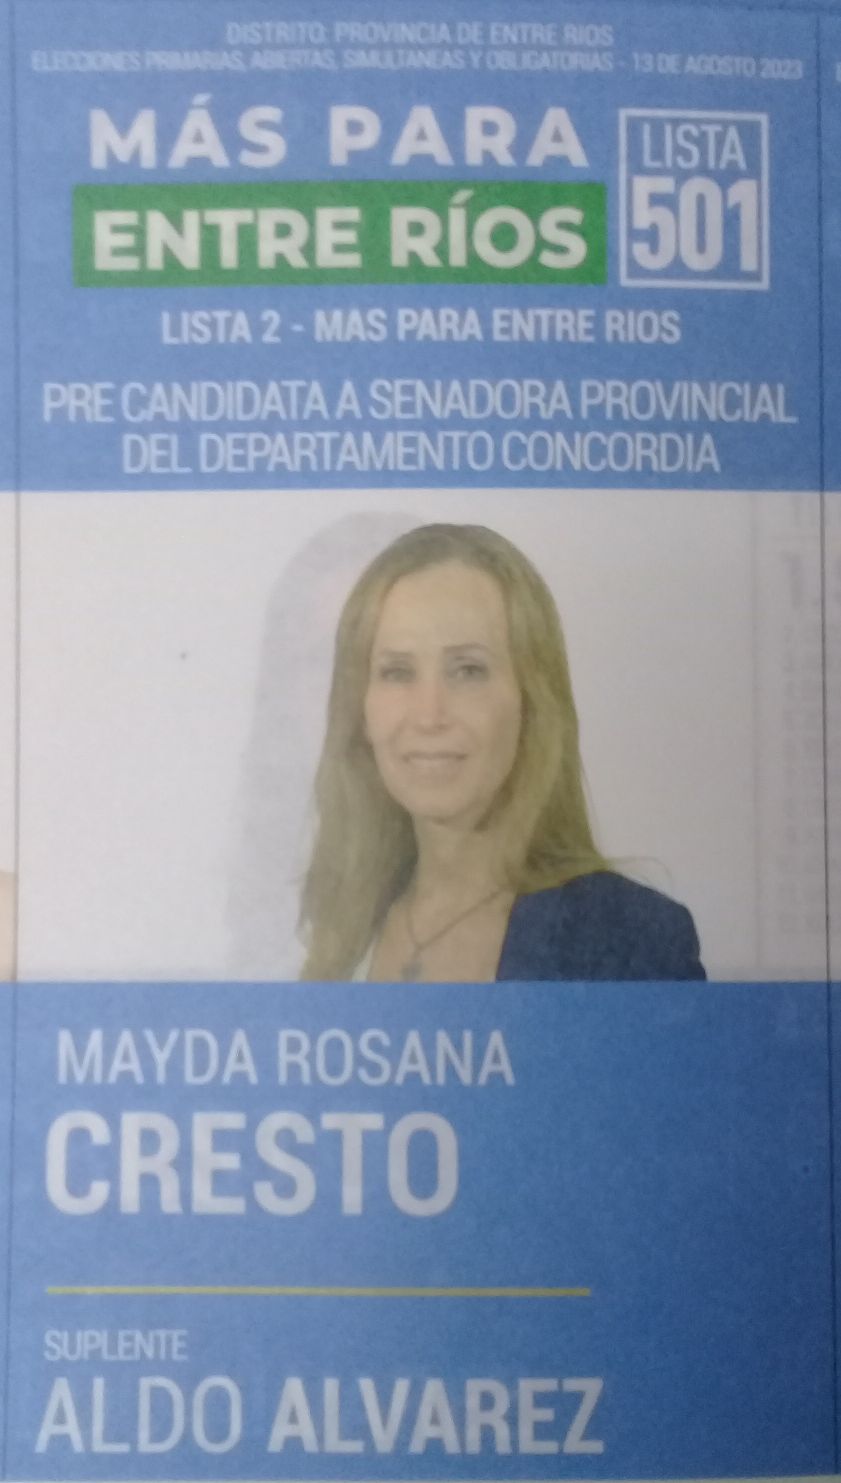 Lista 501, Más Para Entre Ríos, encabezada por Mayda Rosana Cresto.